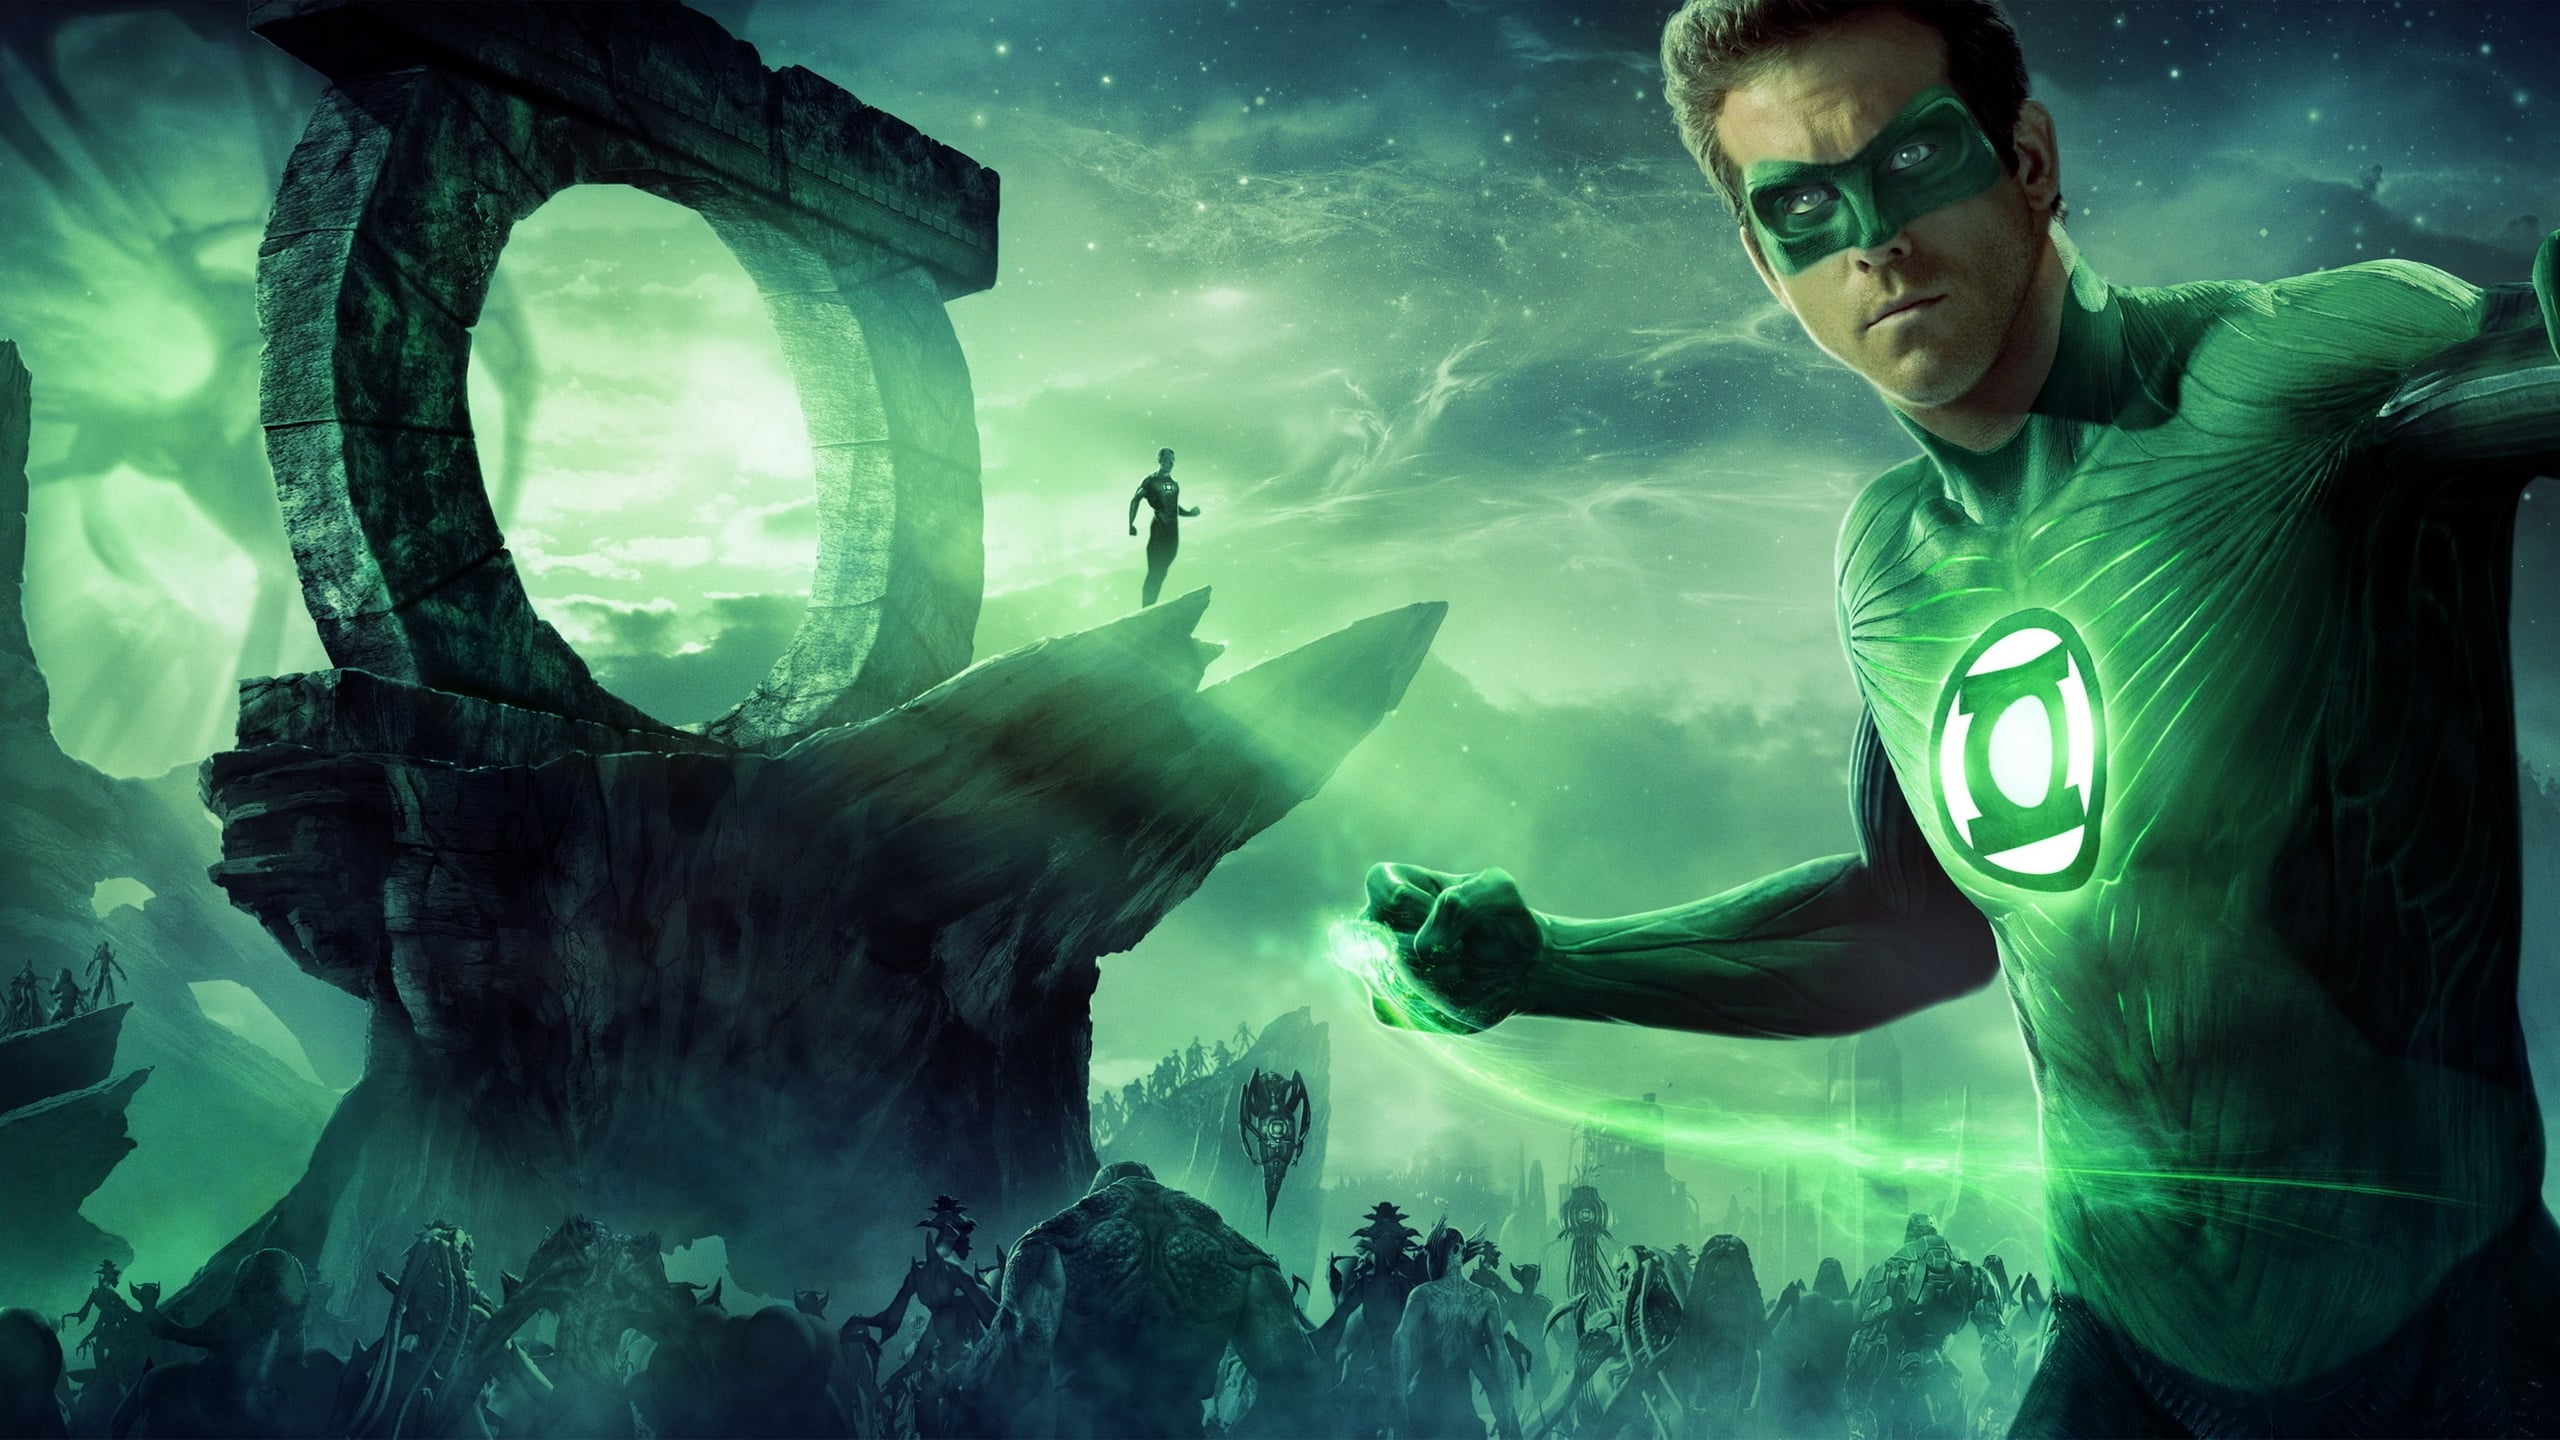 Poster Phim Chiến Binh Đèn Lồng Xanh (Green Lantern)